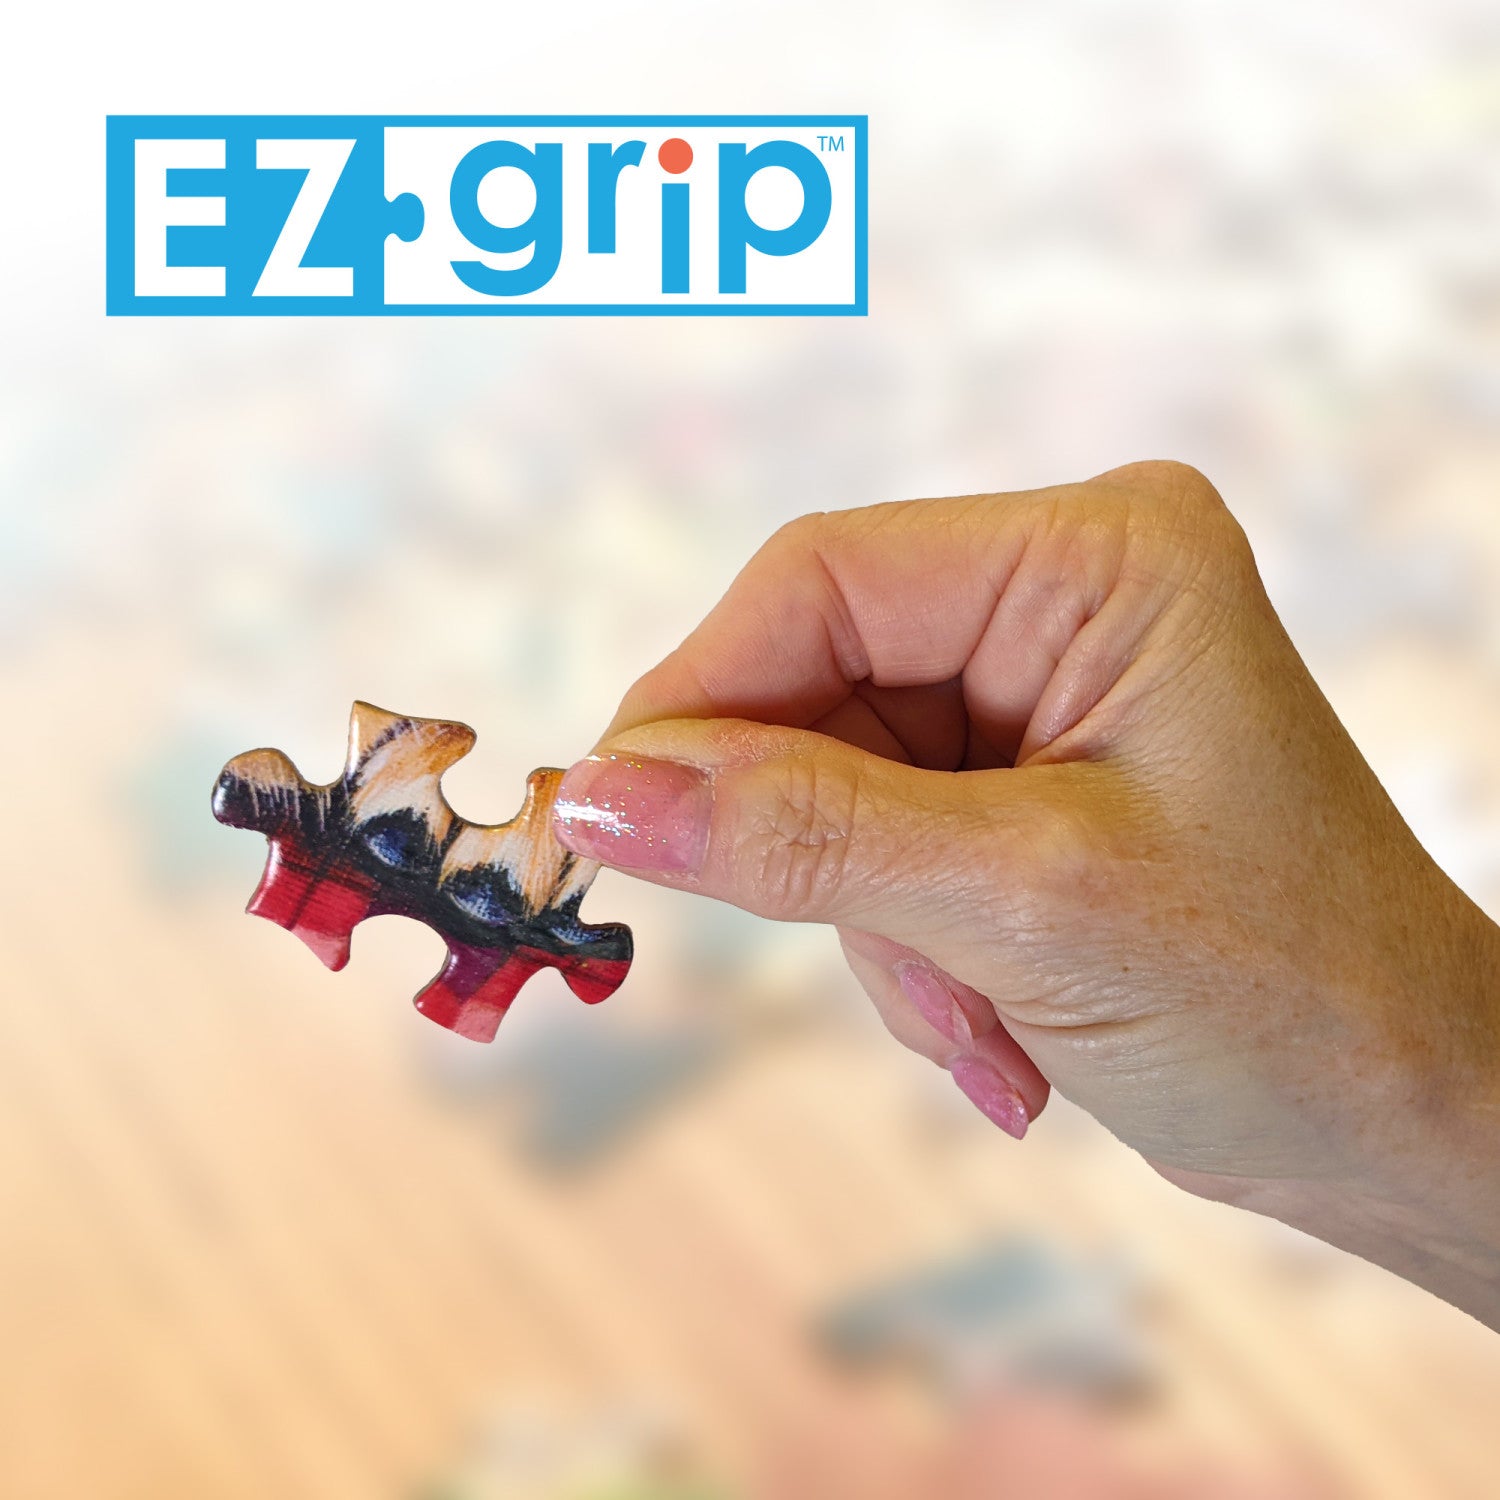 Green Acres - Best Friends 300 Piece EZ Grip Jigsaw Puzzle